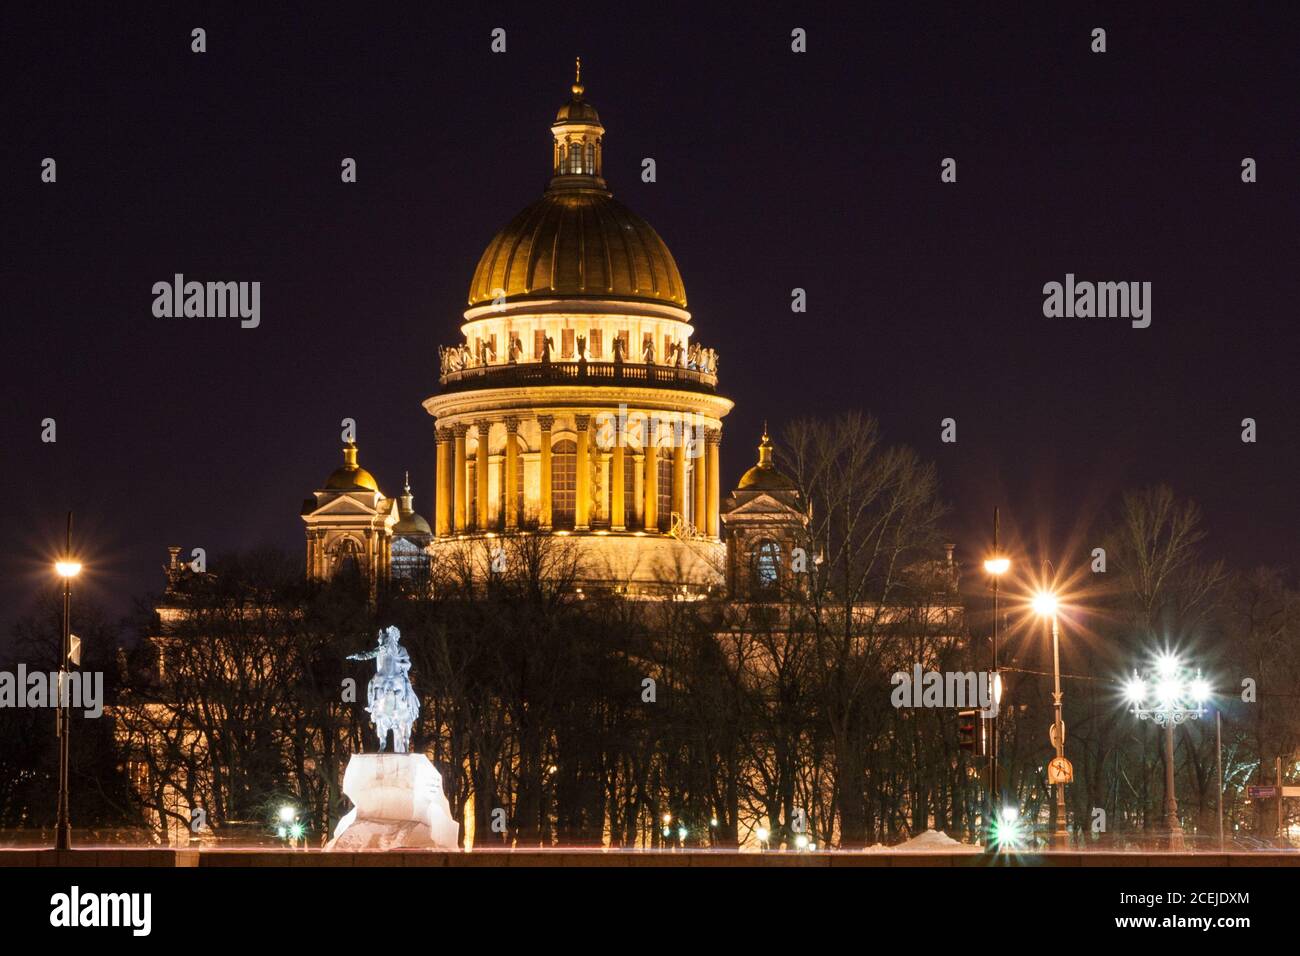 La cathédrale Saint-Isaac. Nuit d'hiver de Saint-Pétersbourg Banque D'Images